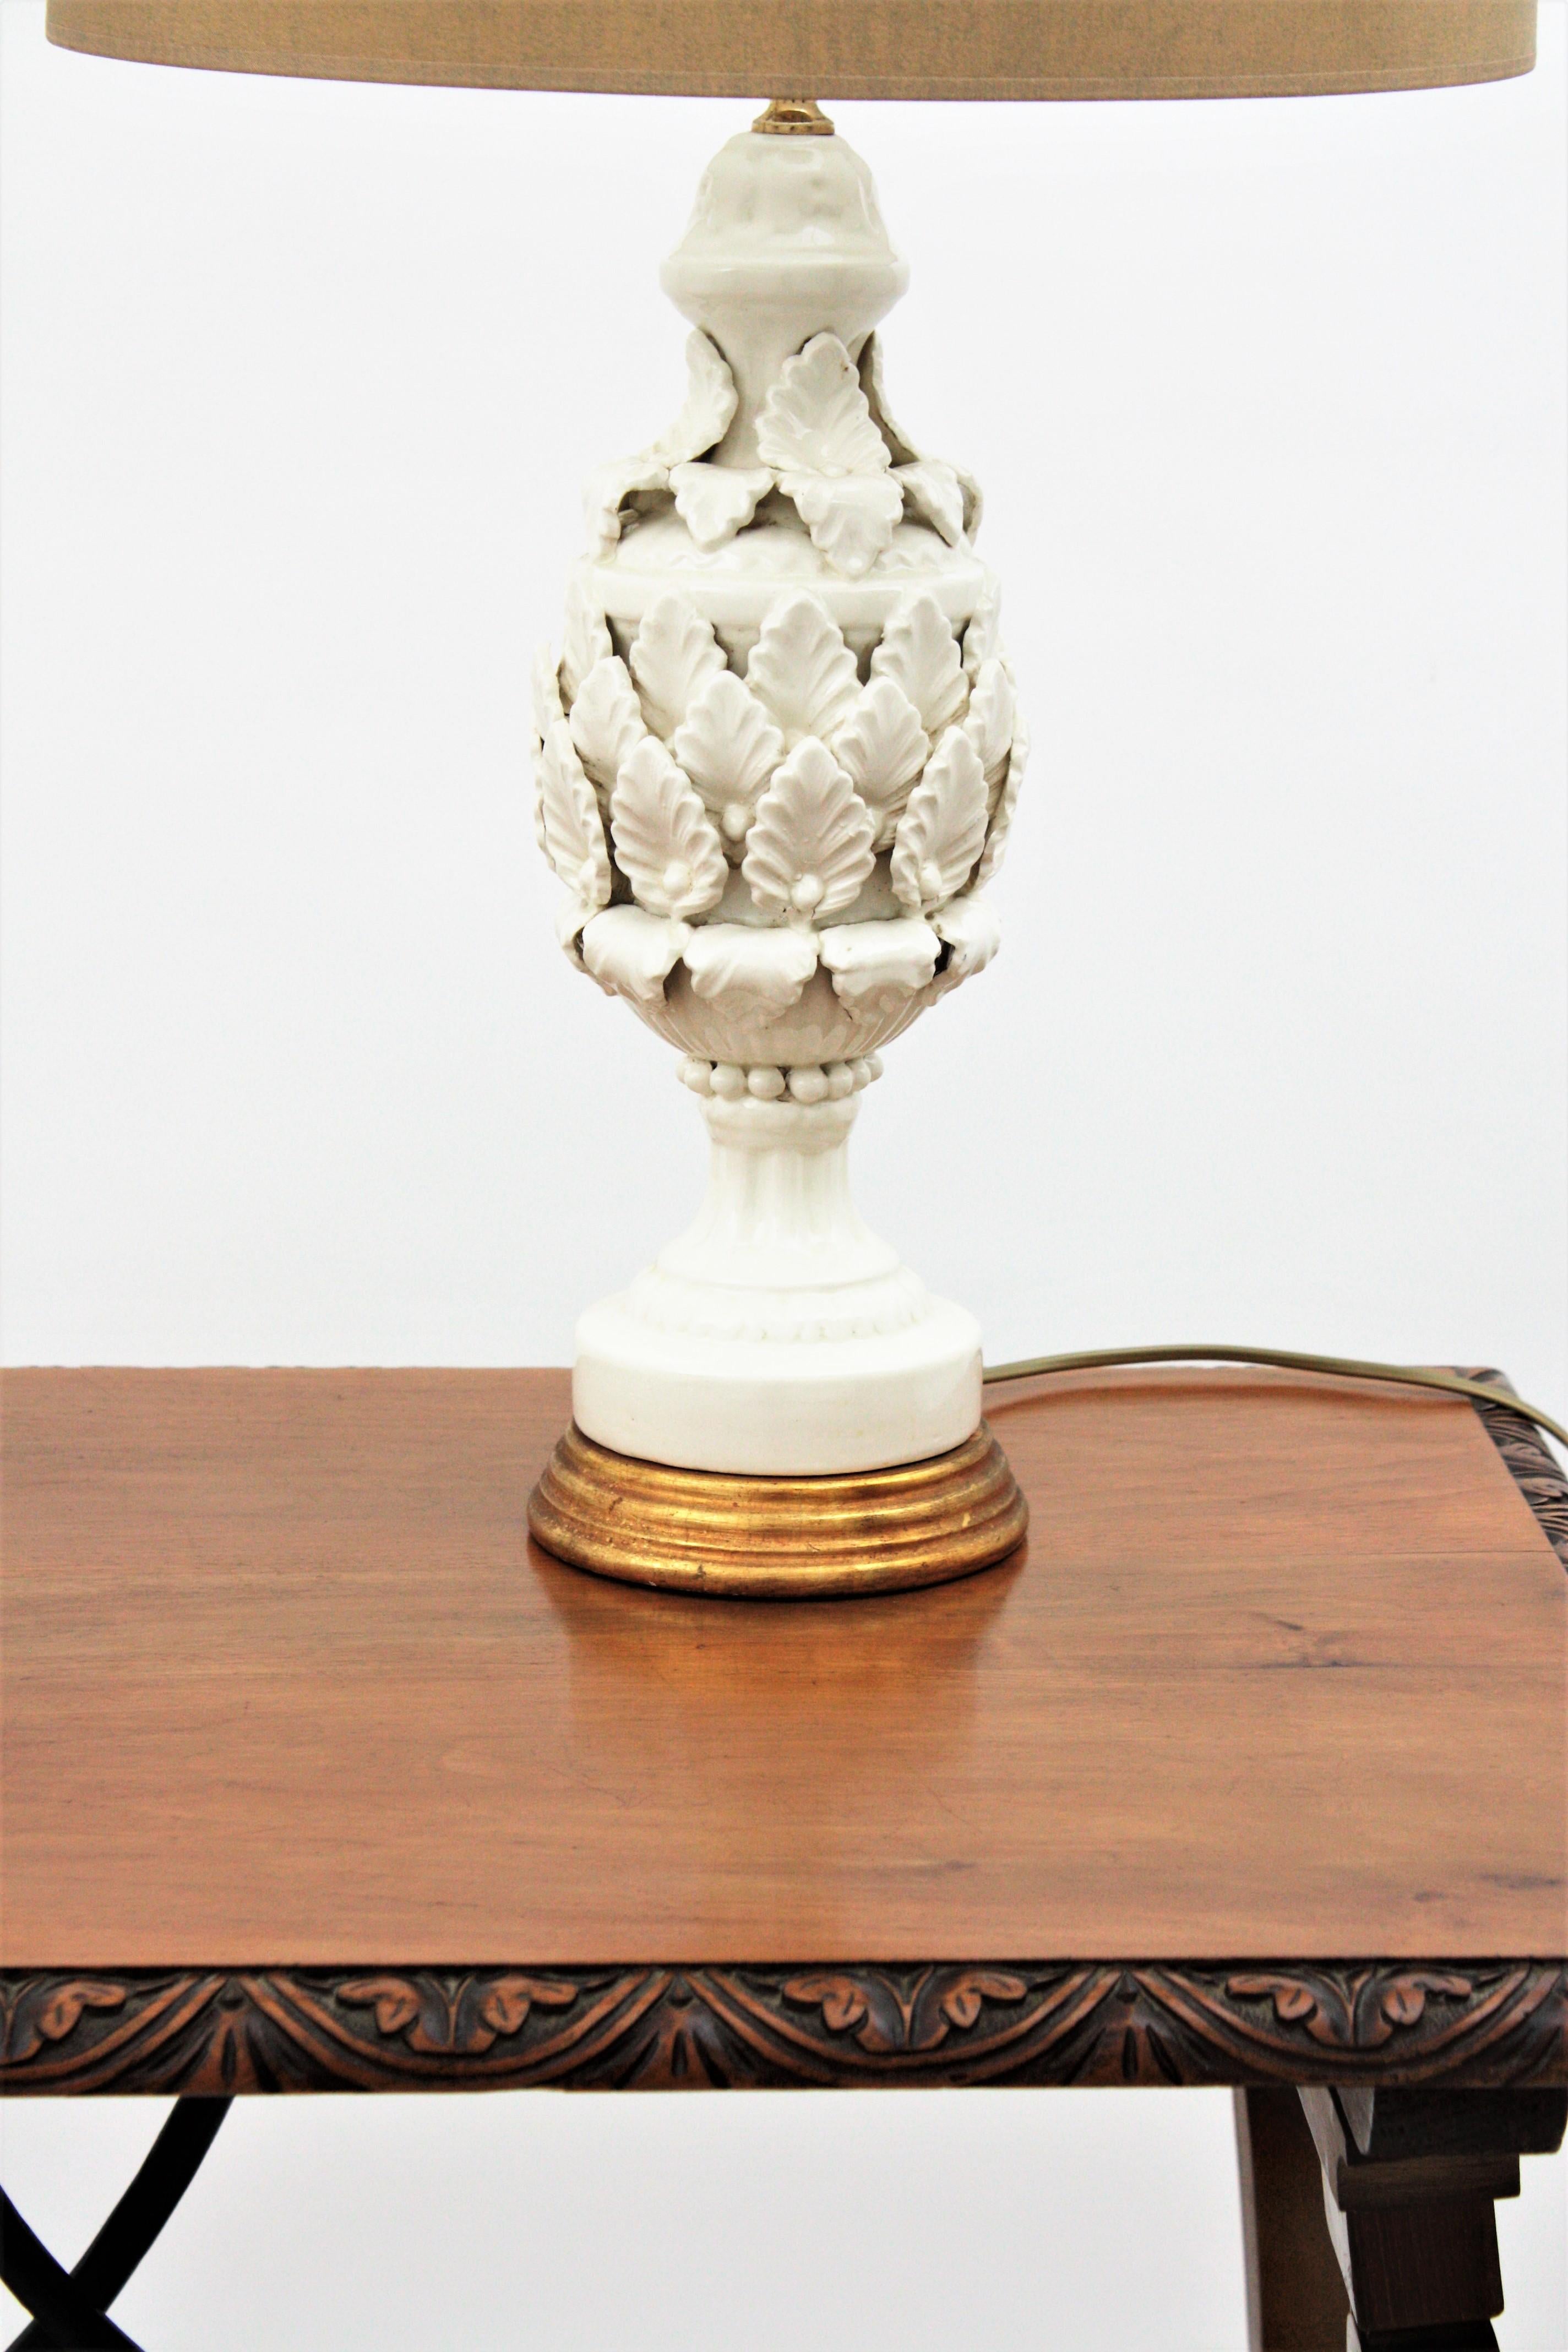 Spanish Manises Majolica White Glazed Ceramic Table Lamp on Giltwood Pedestal 6